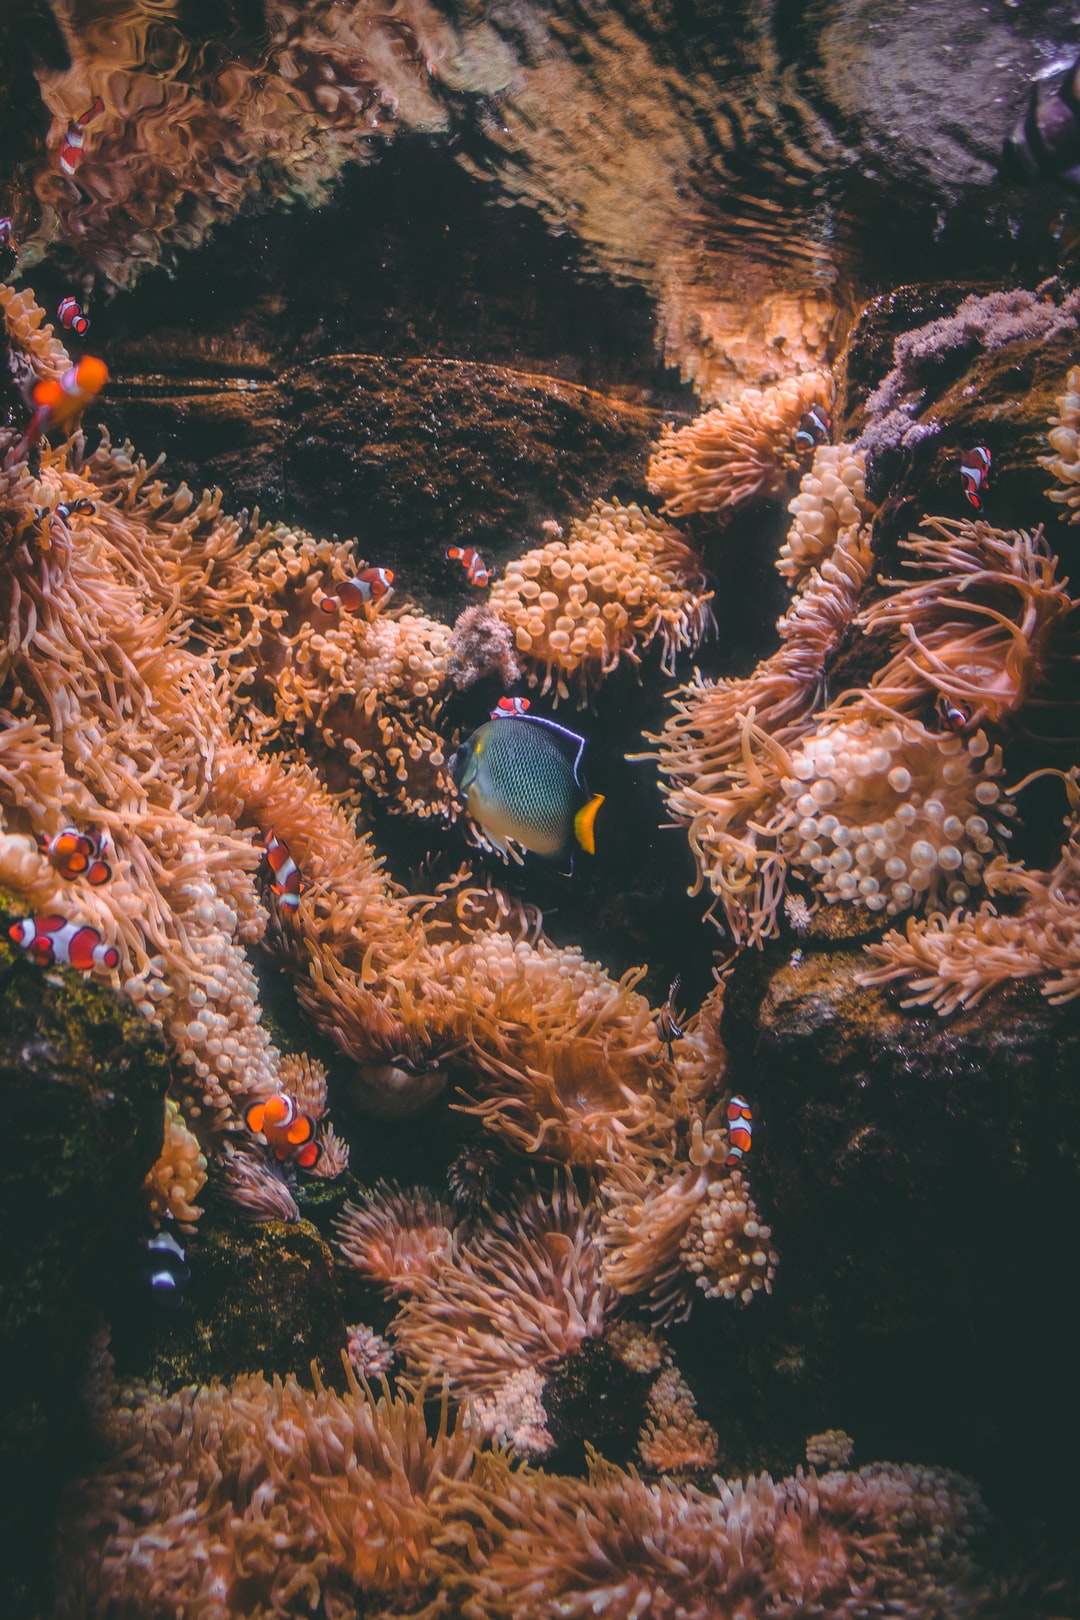 23 wichtige Fragen zu Wie Richte Ich Ein Wels Aquarium Ein?